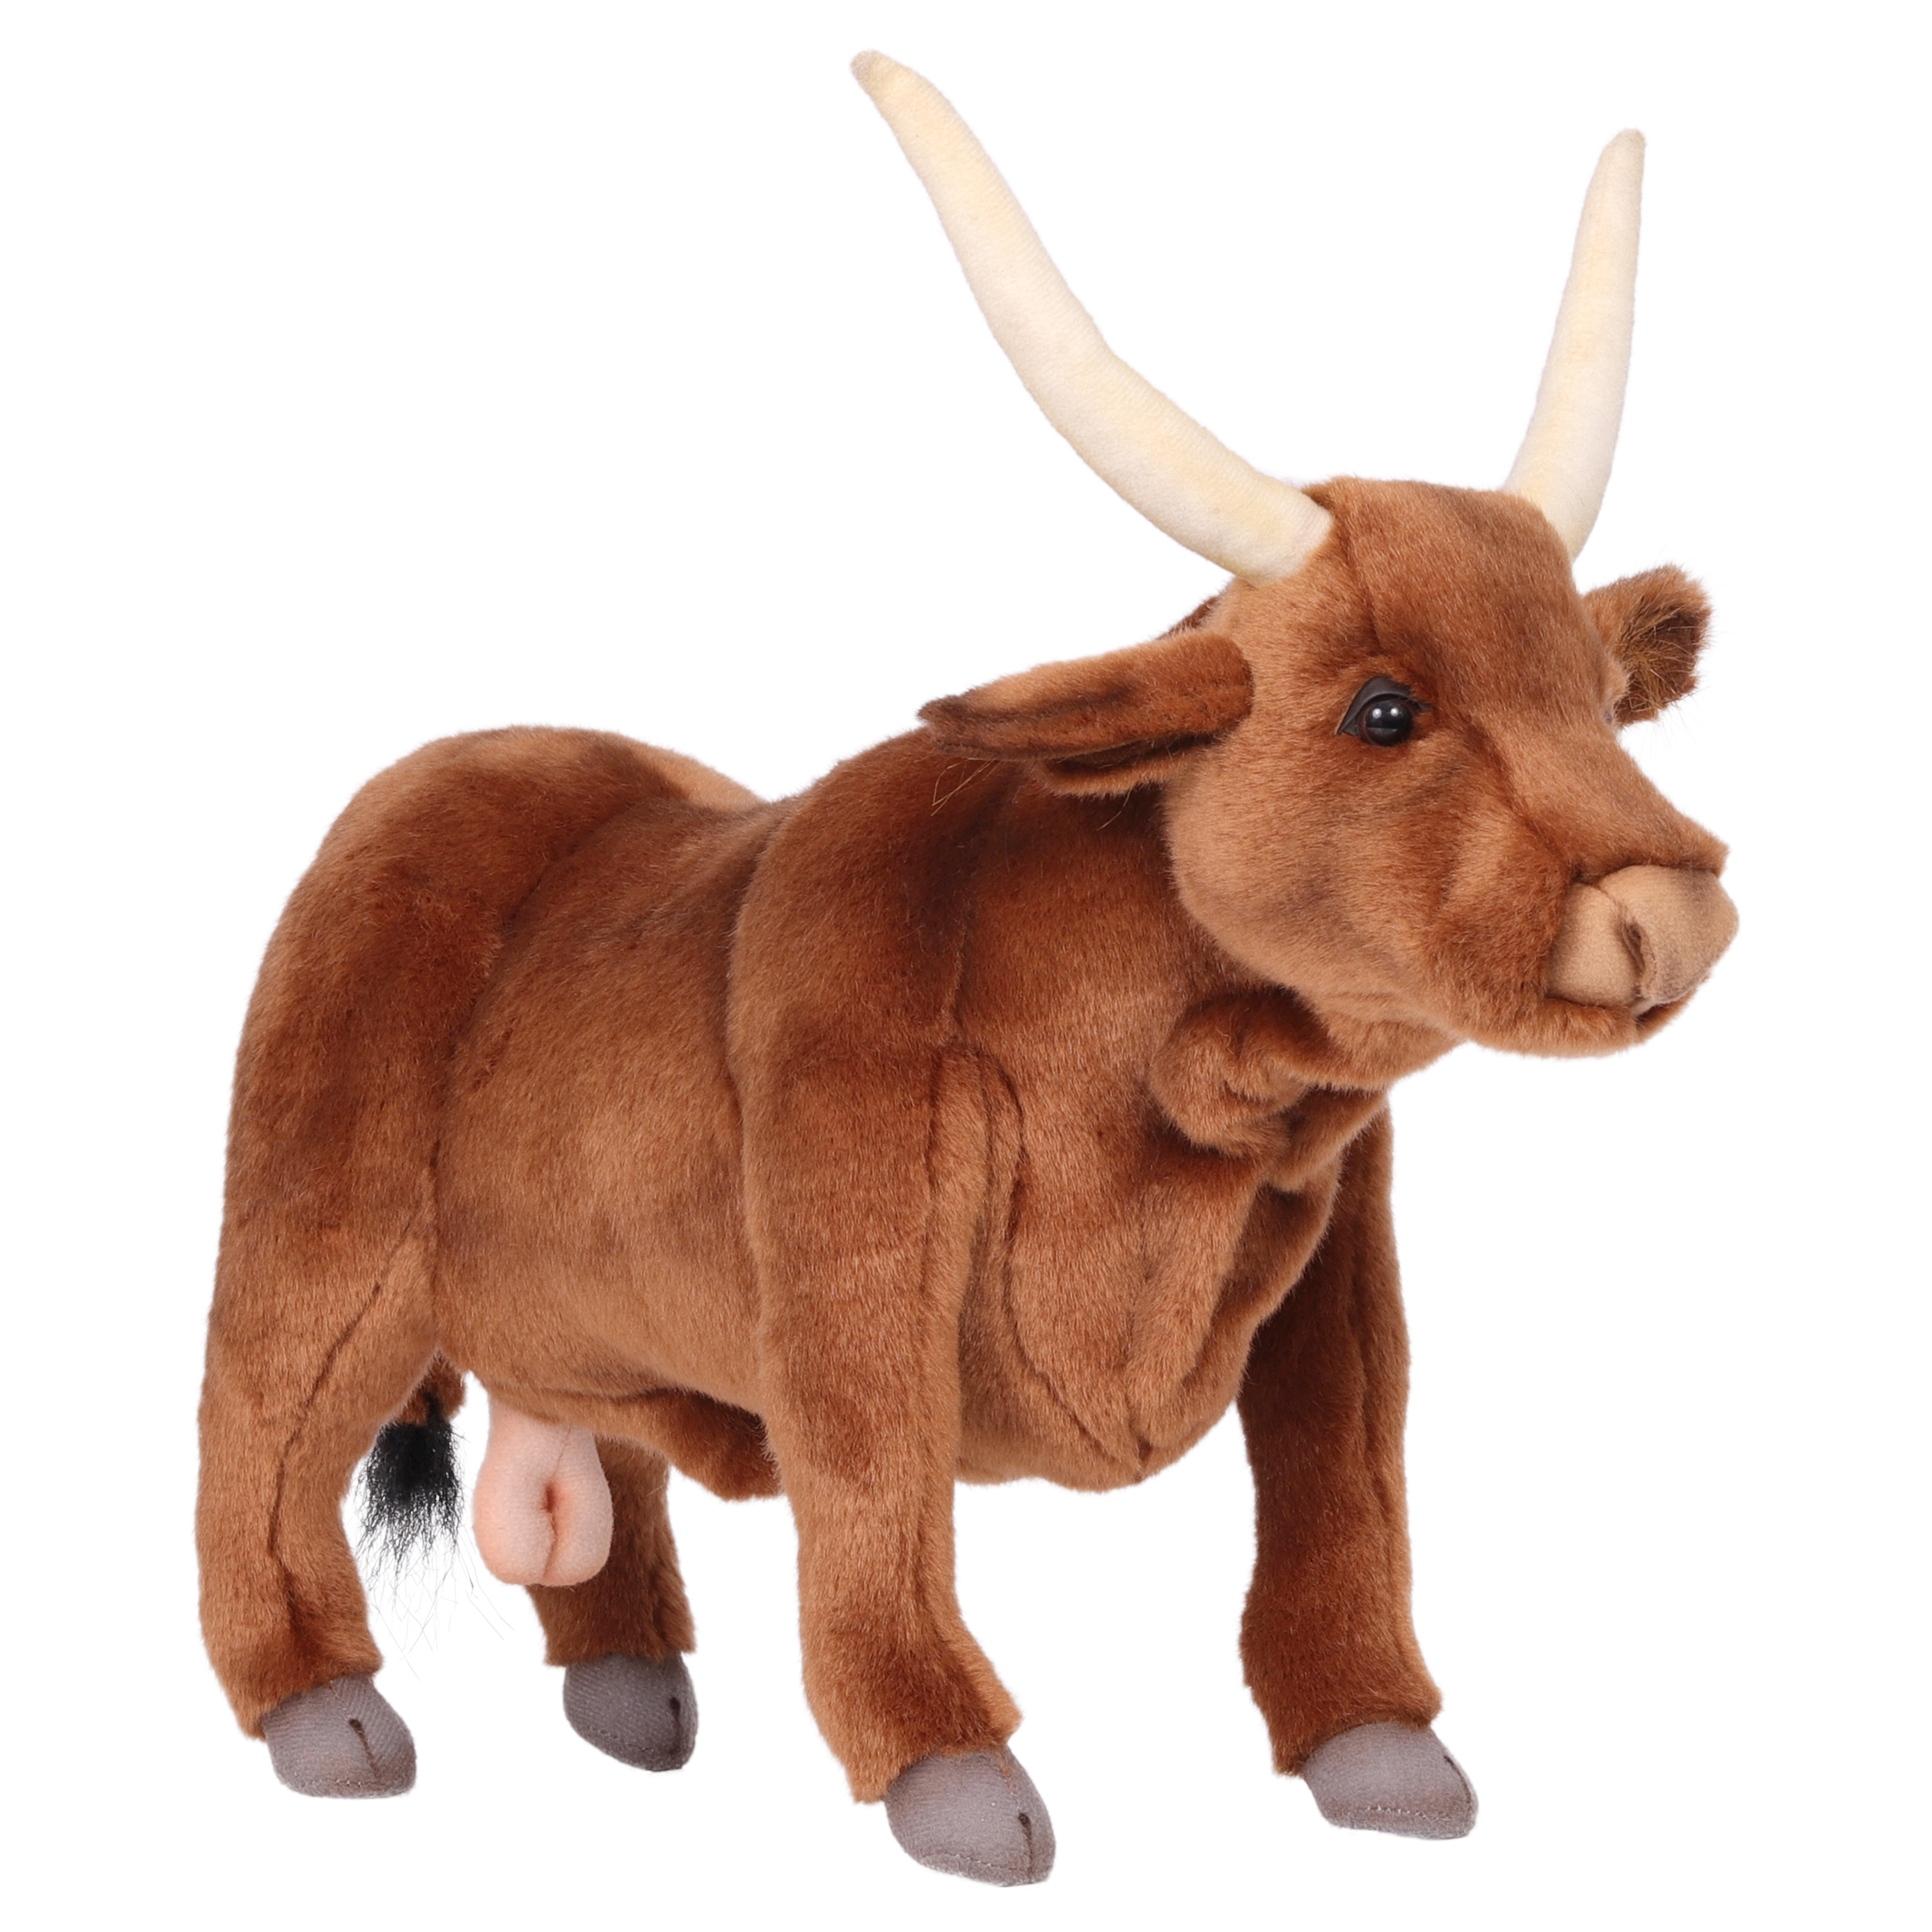 Реалистичная мягкая игрушка Hansa Creation Бык, коричневый, 37 см реалистичная мягкая игрушка hansa creation коричневый кролик 24 см